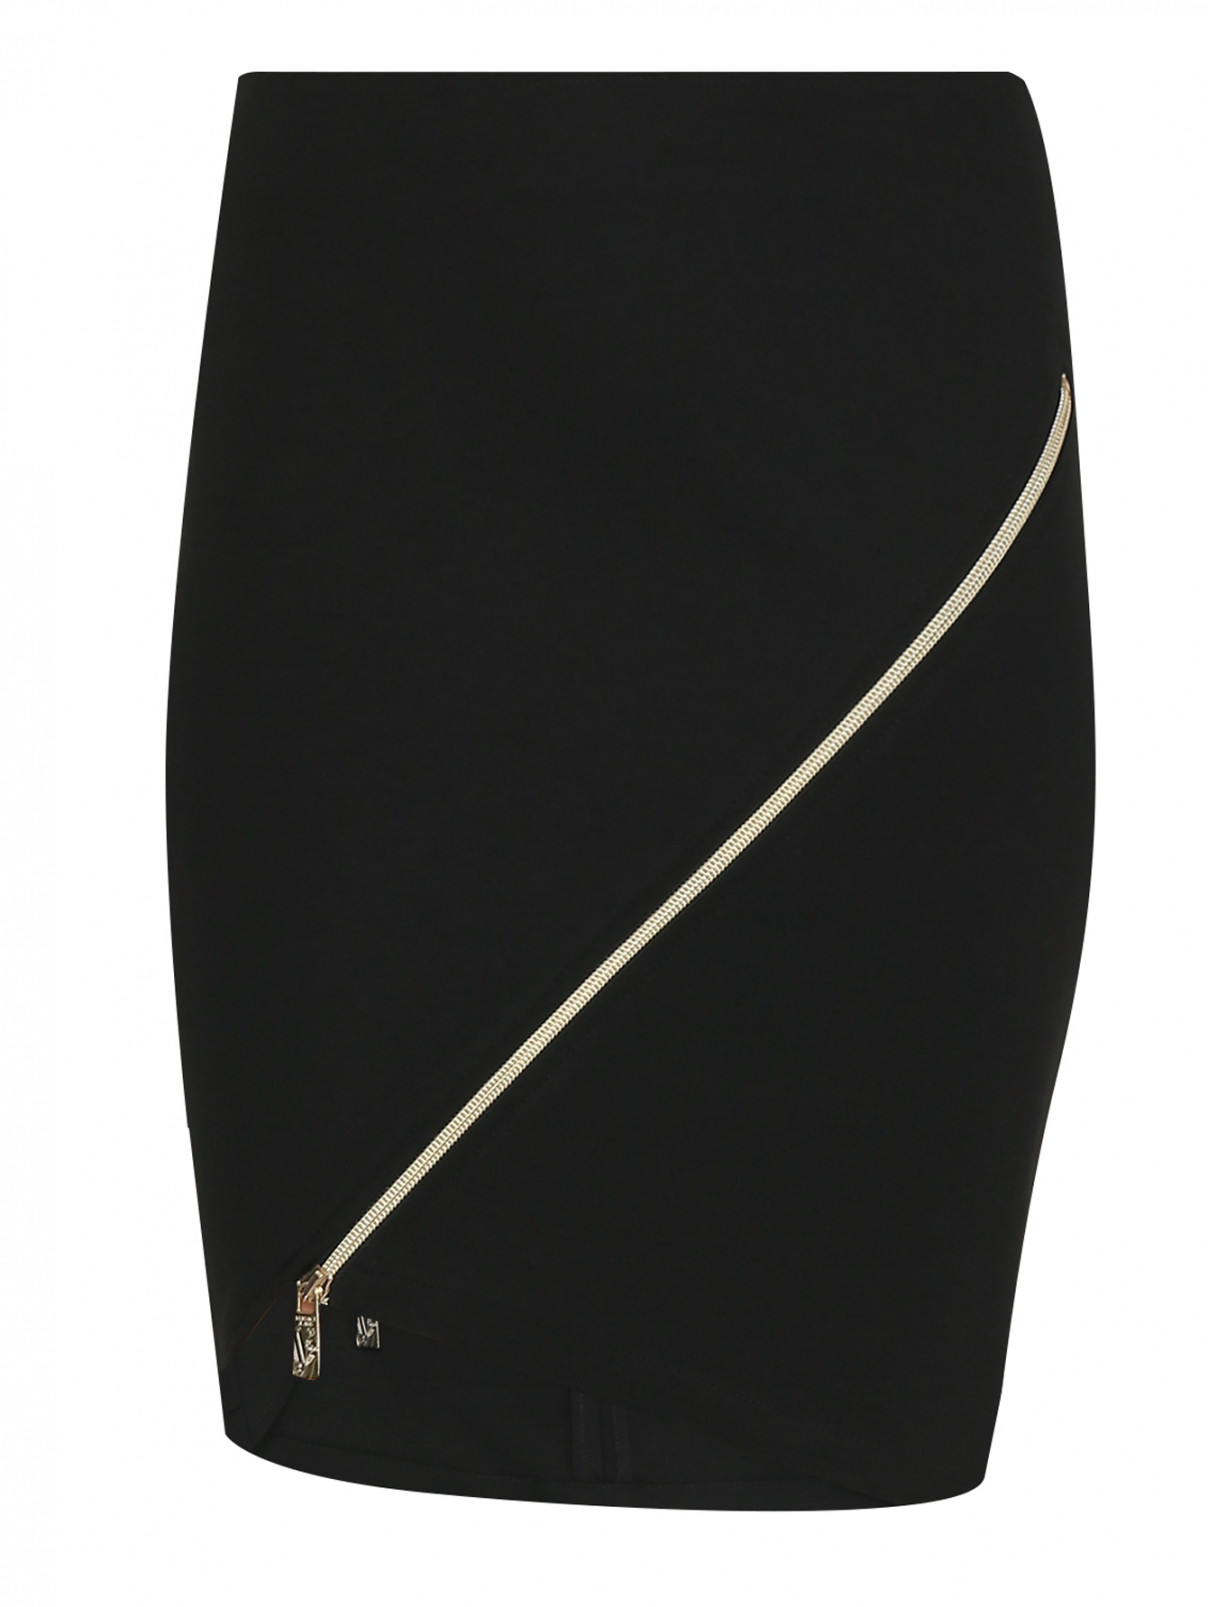 Трикотажная юбка-мини с молнией Versace Jeans  –  Общий вид  – Цвет:  Черный